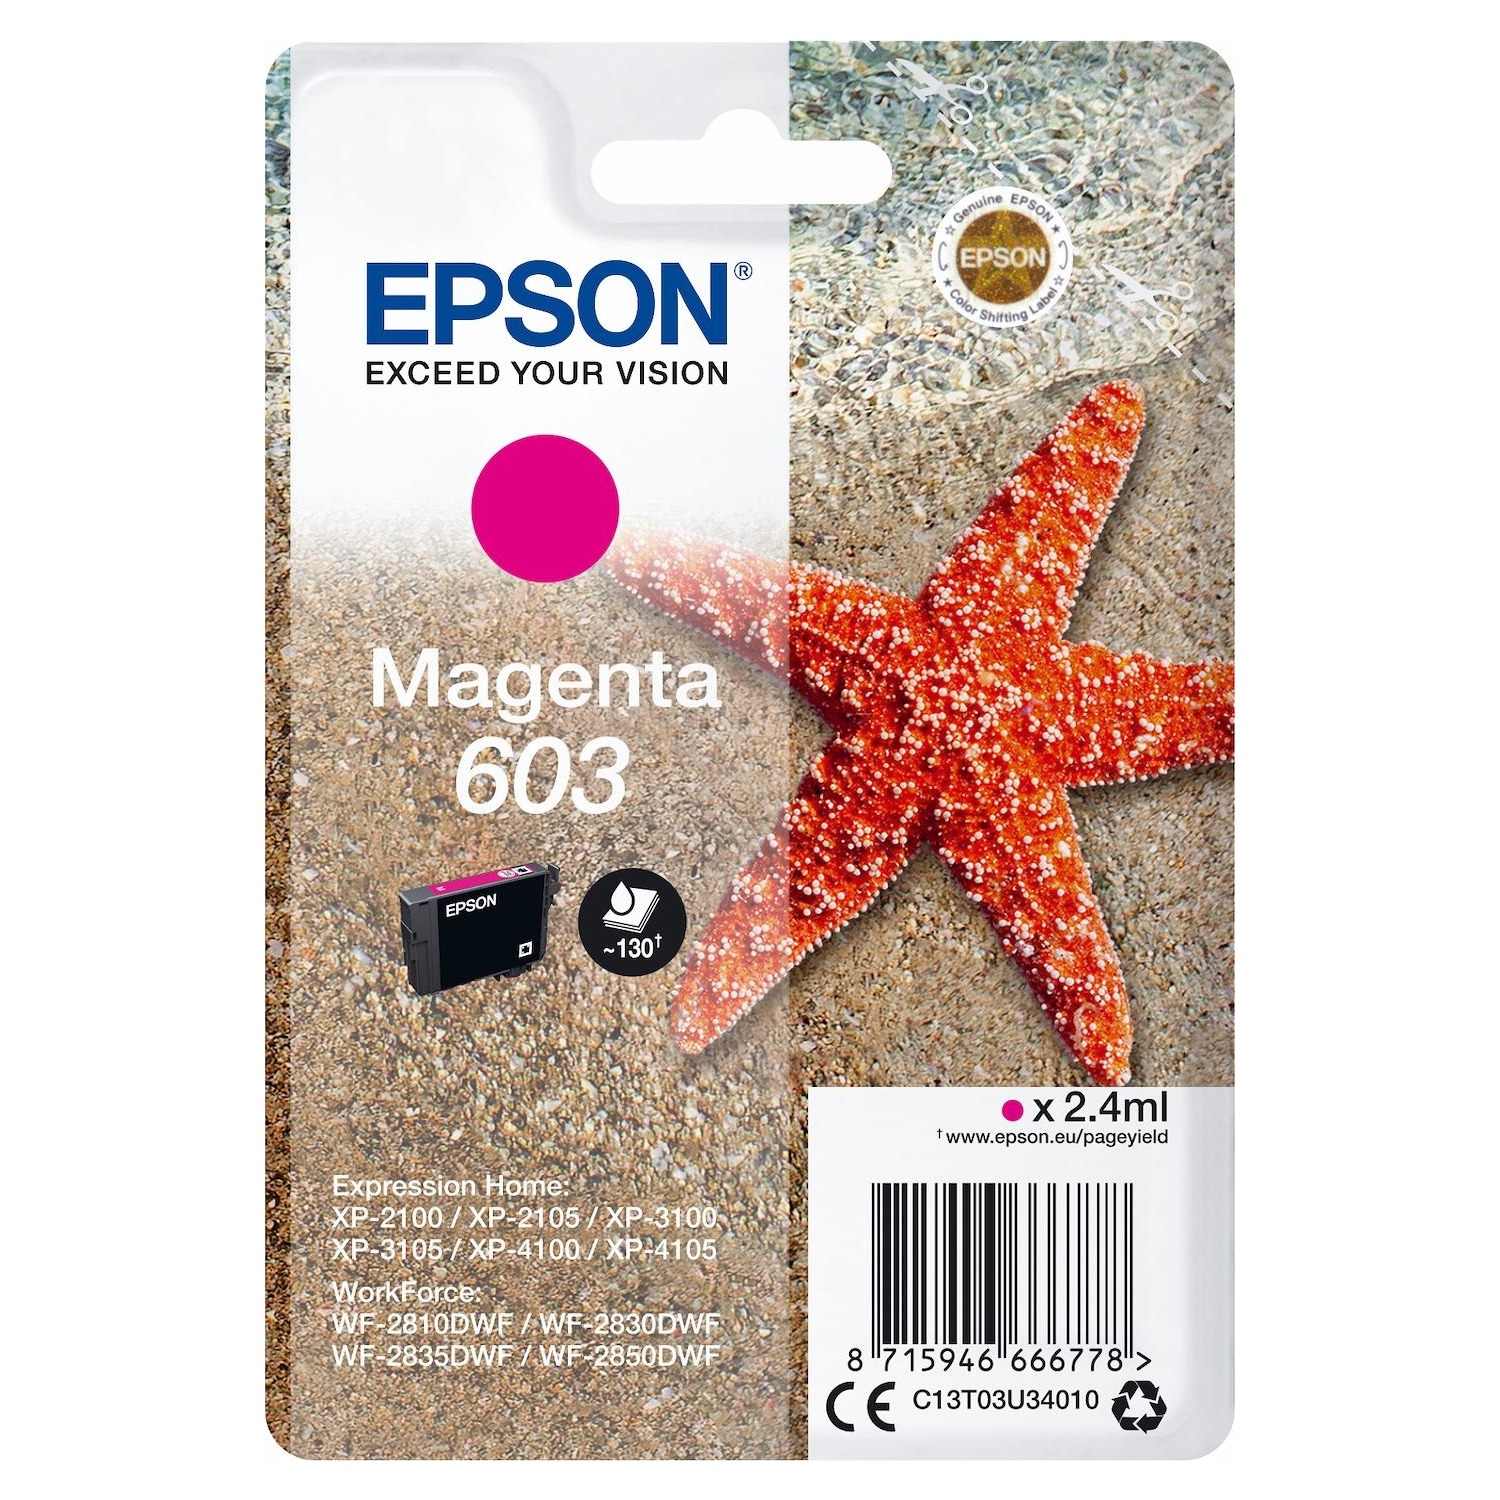 Immagine per Cartuccia Epson 603 magenta stella marina         per XP2105 XP2100 XP3100 XP3105 XP4100 XP4105 da DIMOStore